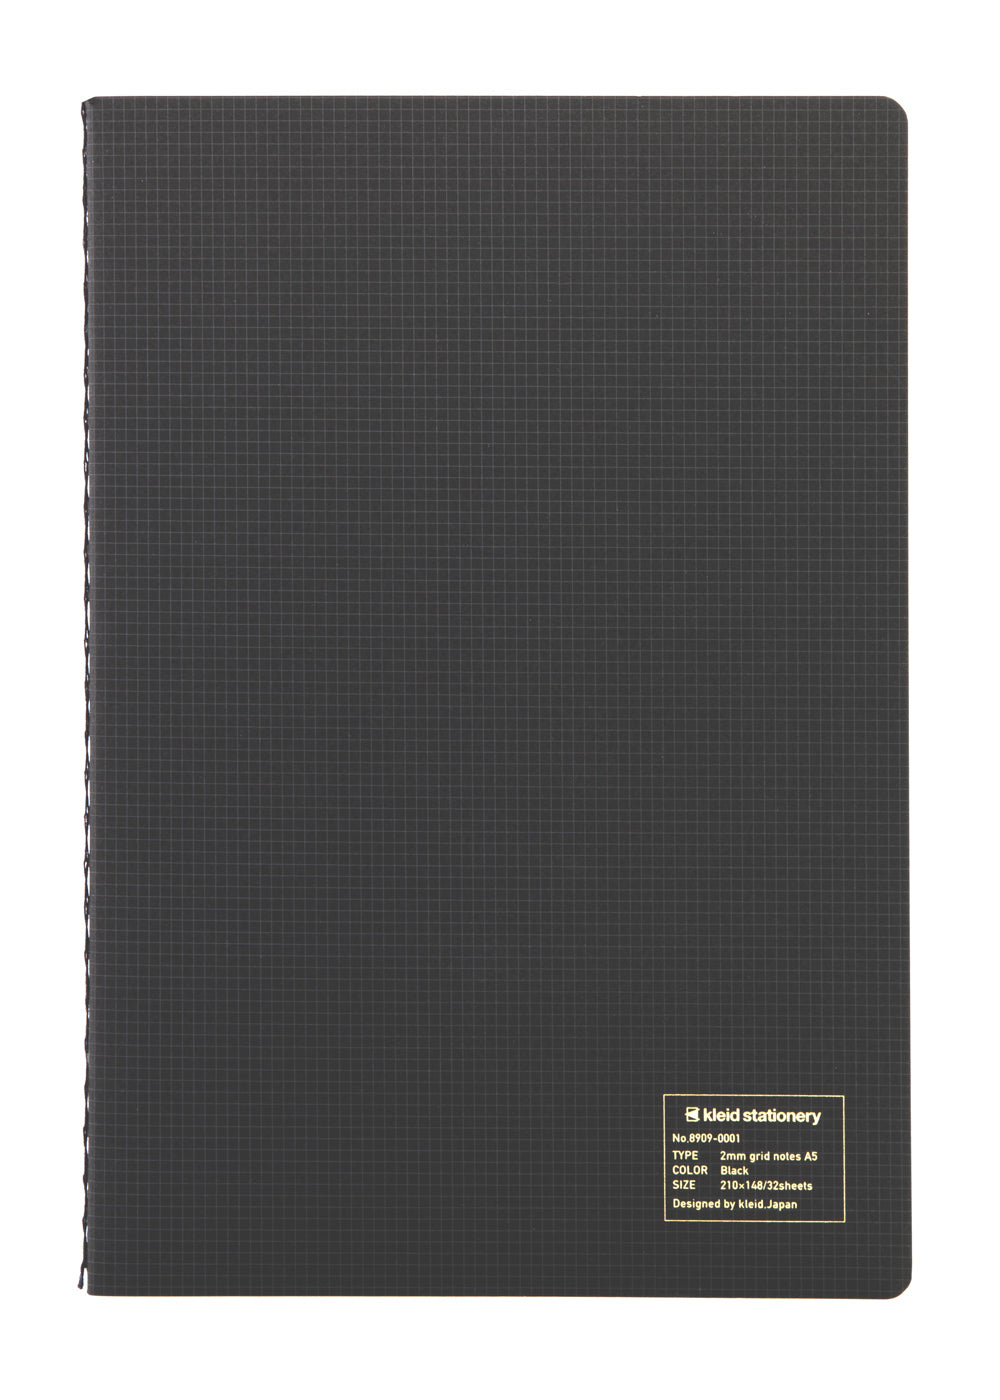 Kleid 2mm Grid Notes A5- Black